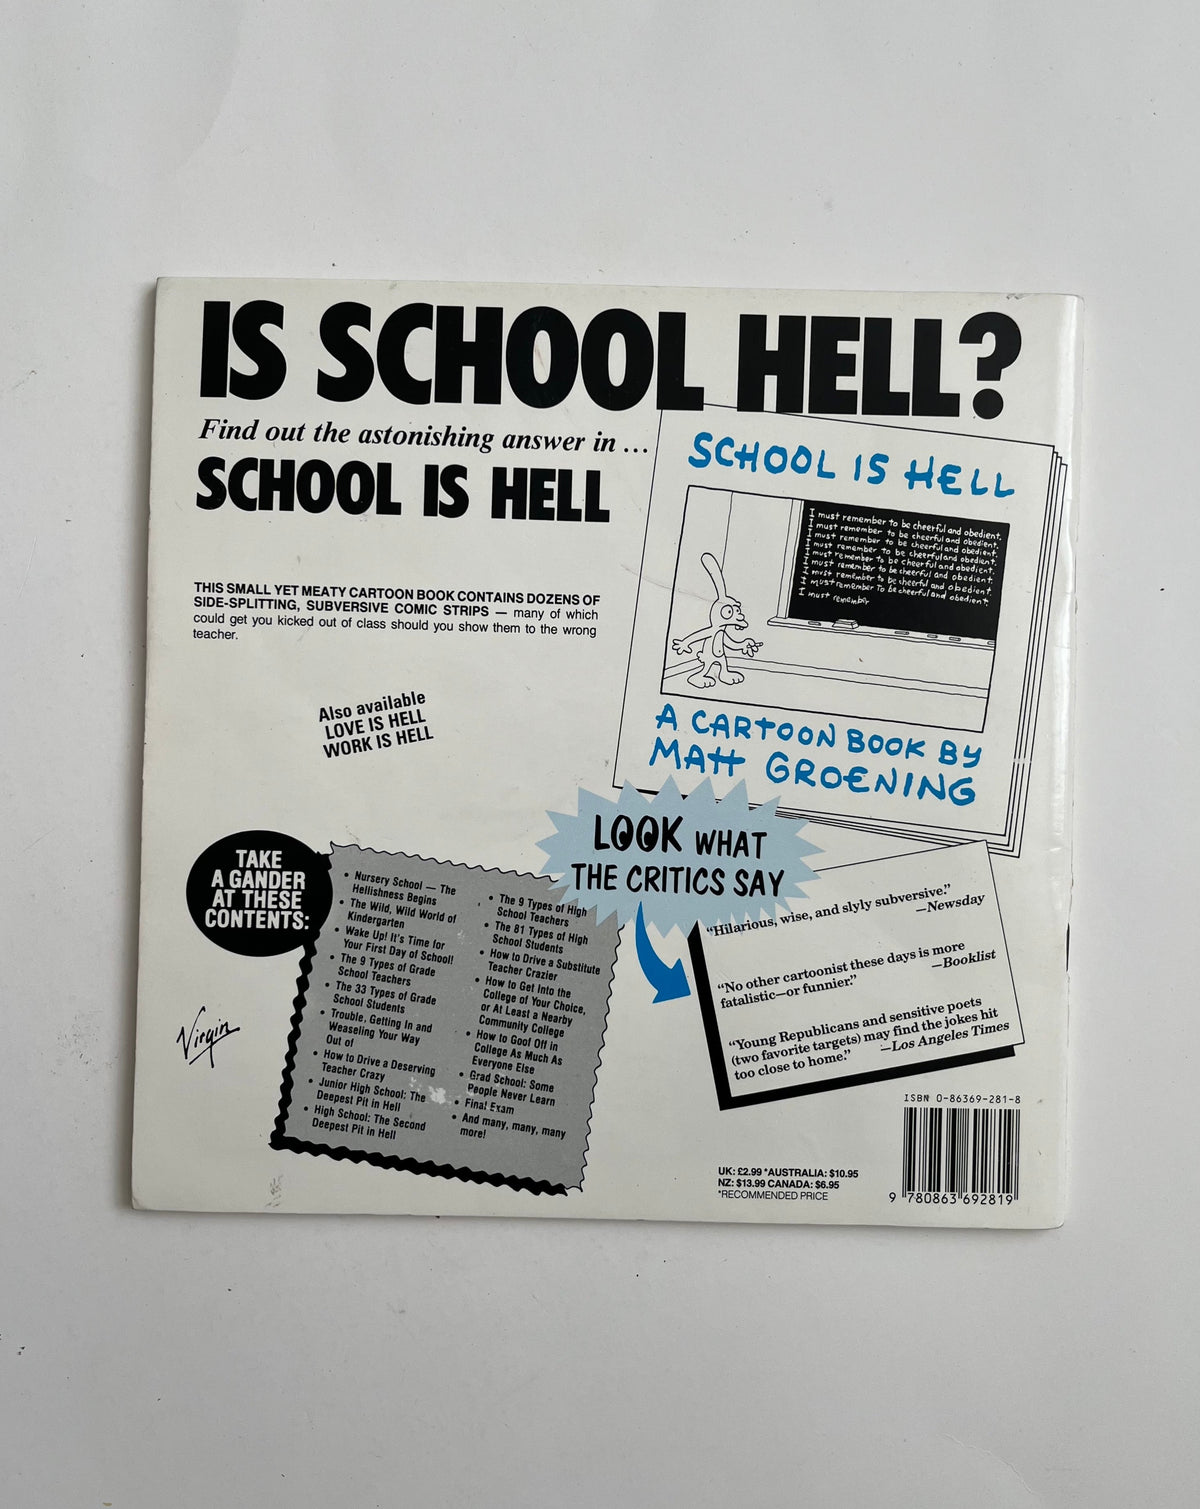 School is Hell by Matt Groening